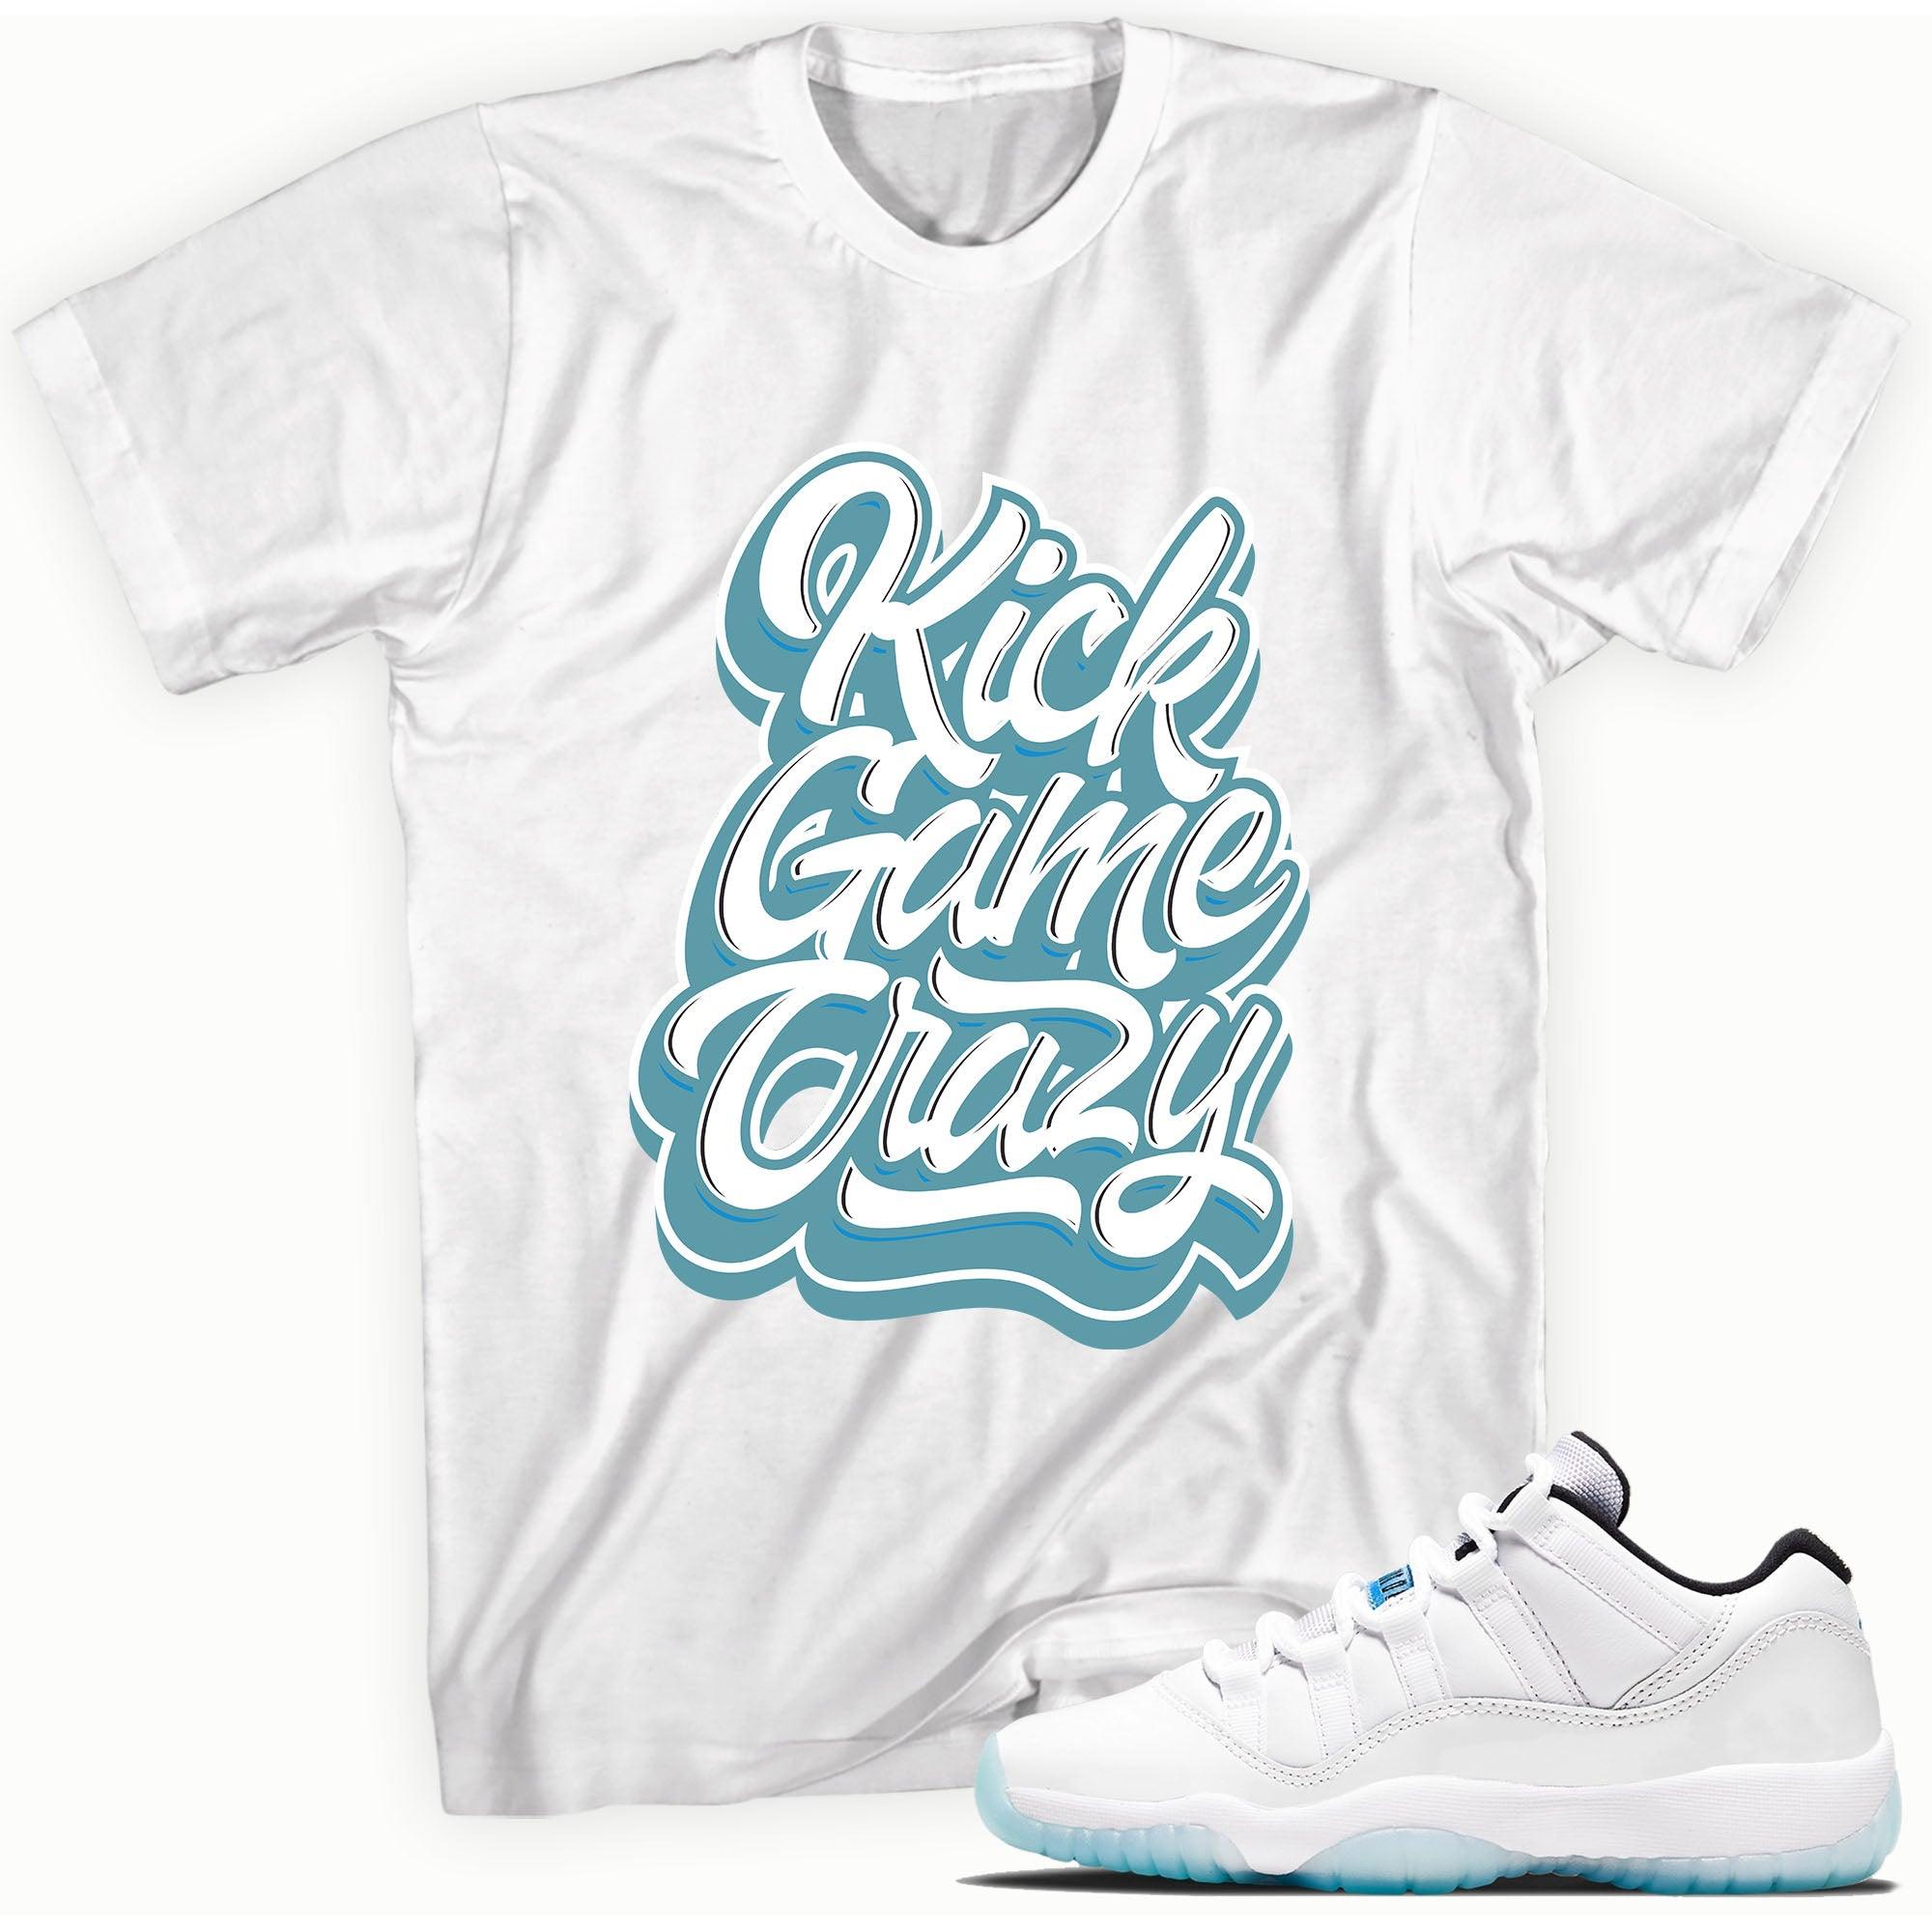 Kick Game Crazy Shirt AJ 11s Retro Low Legend Blue photo